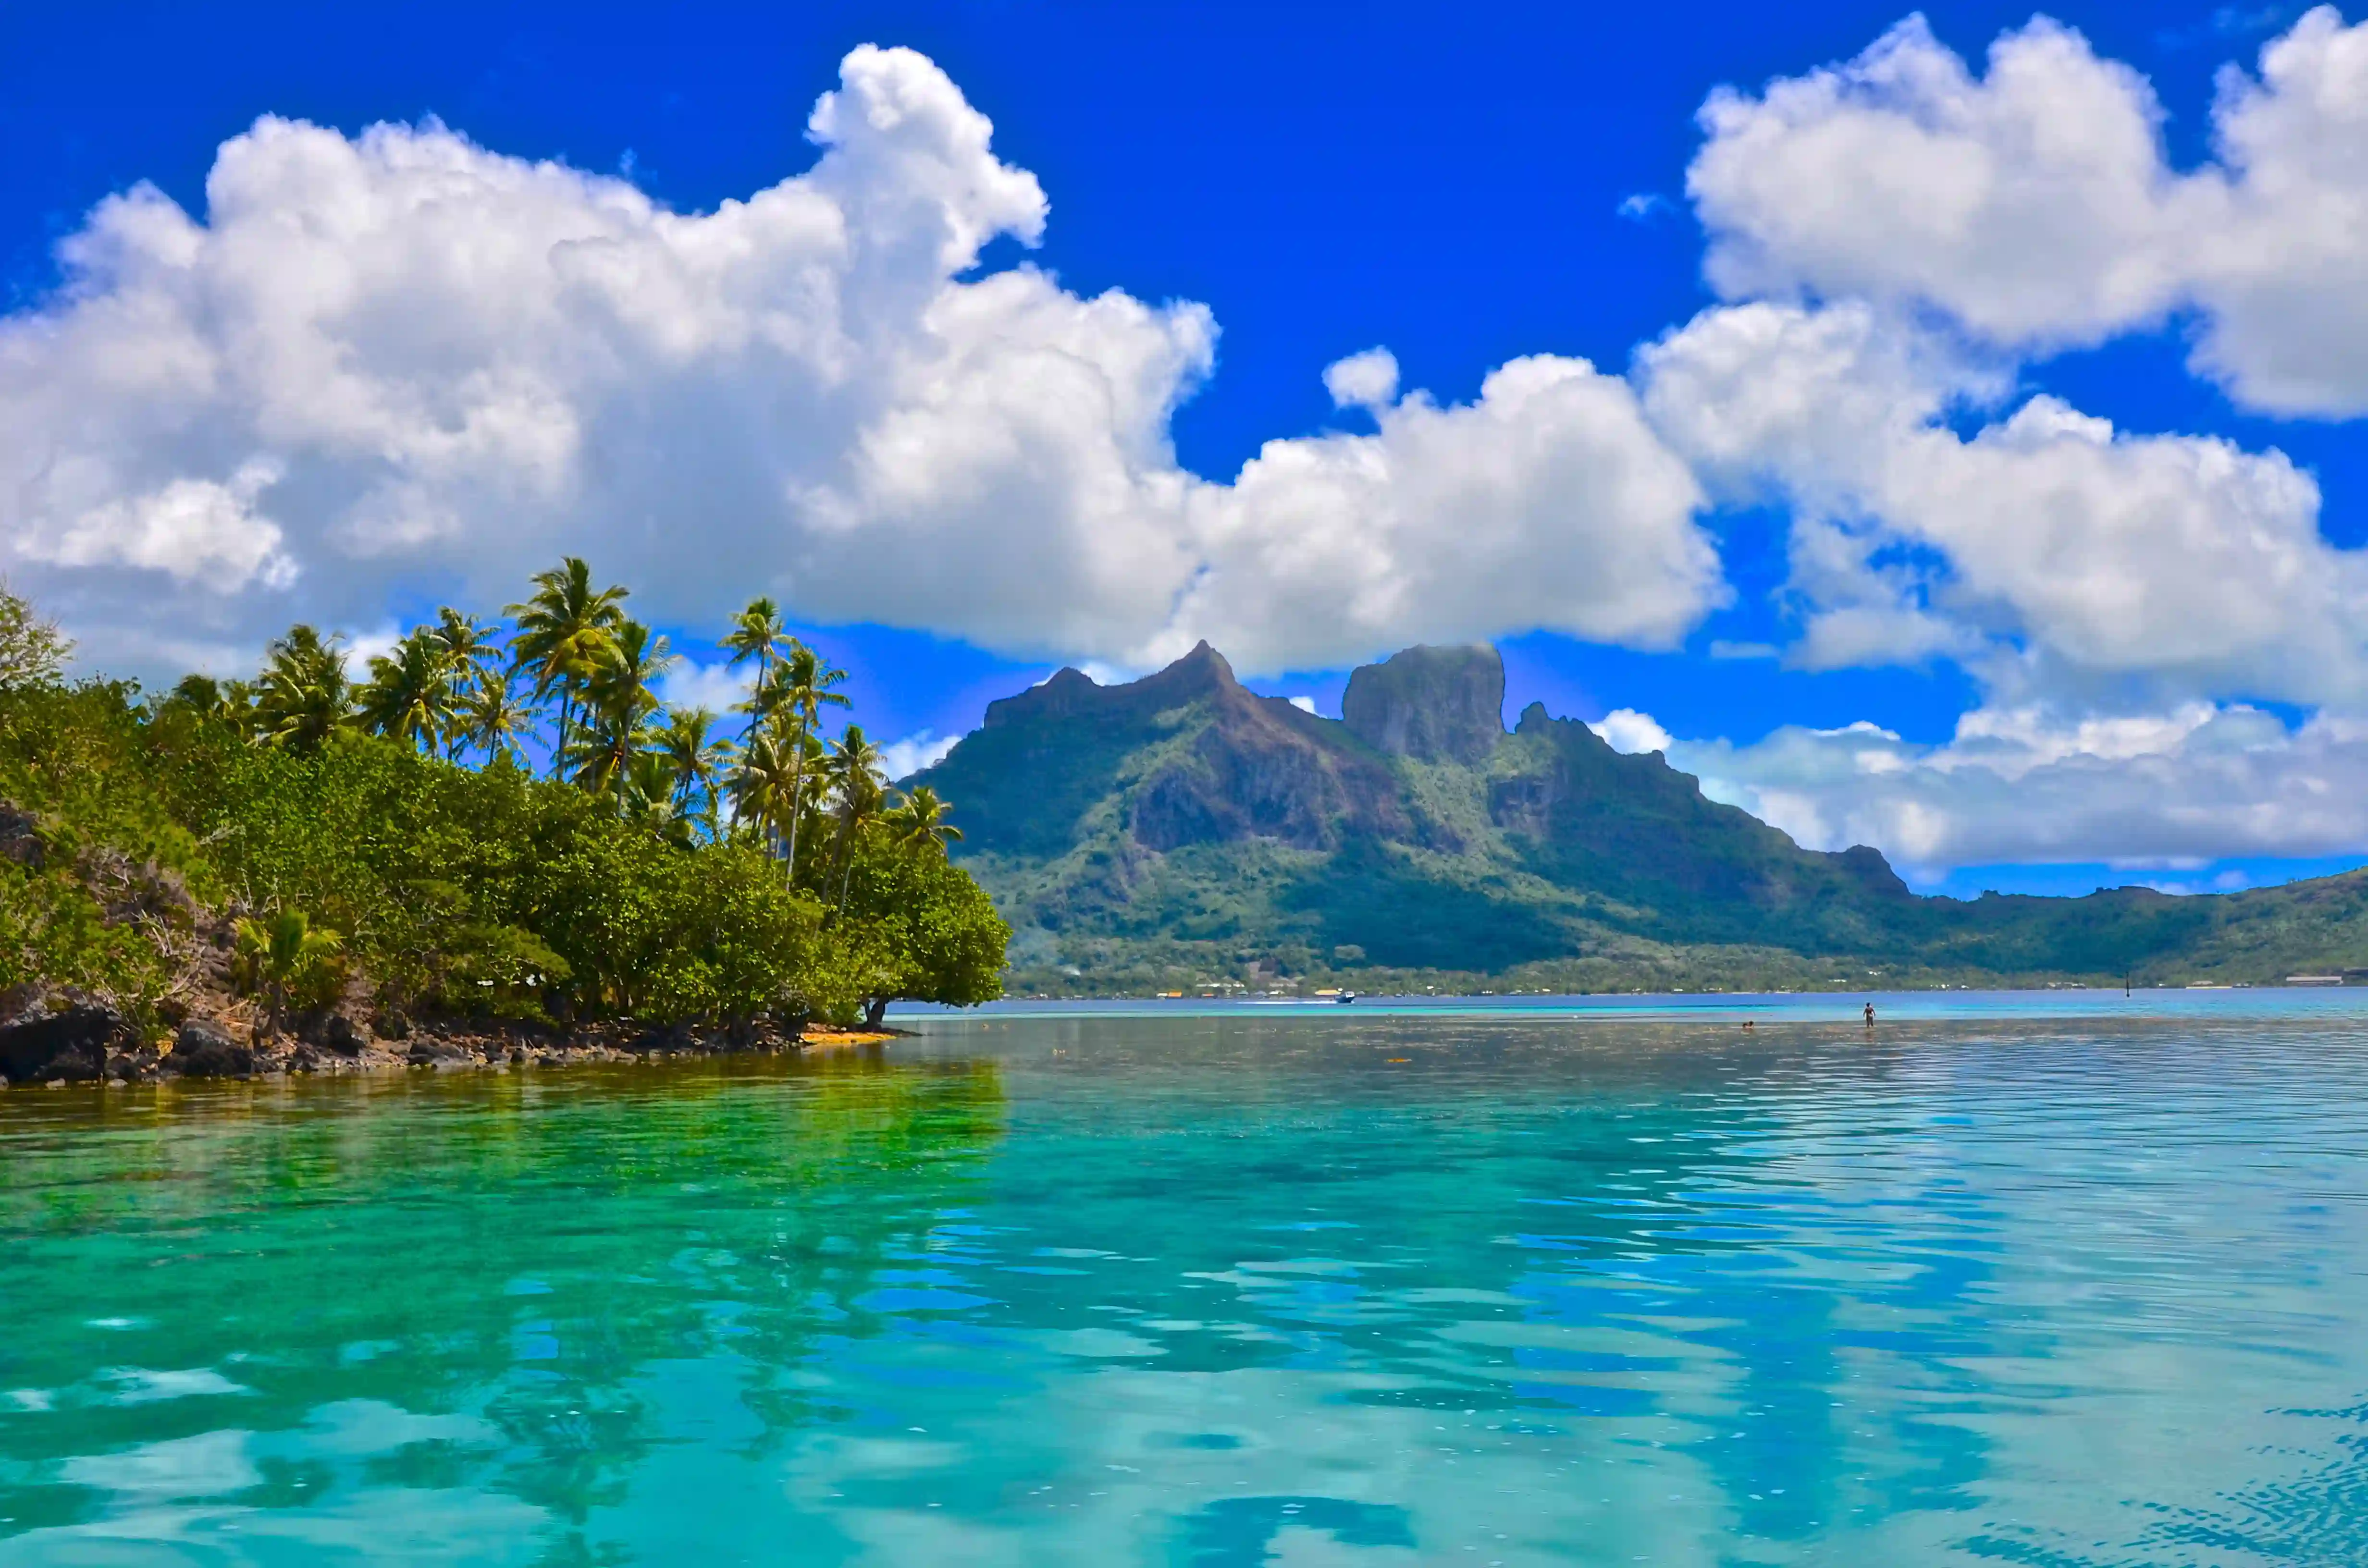 Det ligner næsten et postkort, Bora Bora, Fransk Polynesien